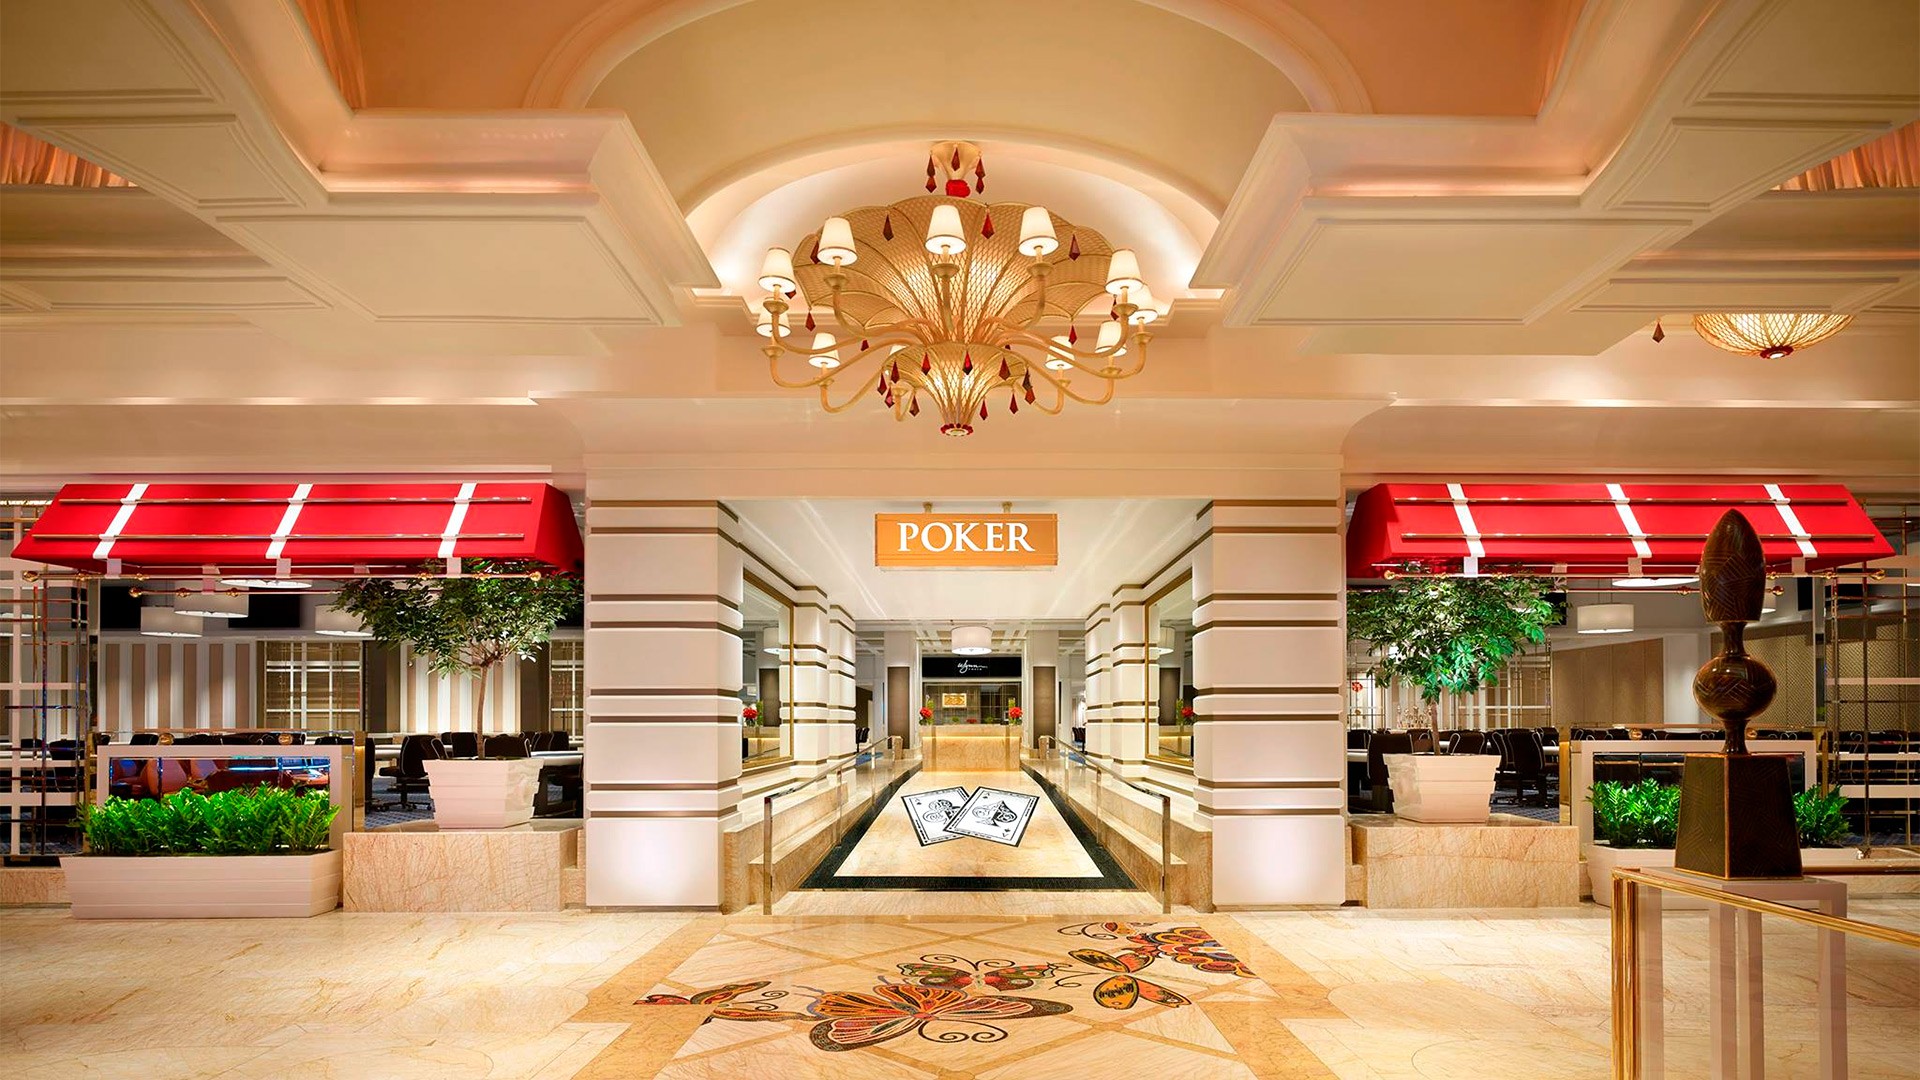 Wynn Poker Room in Las Vegas Will Soon Finally Return to Action